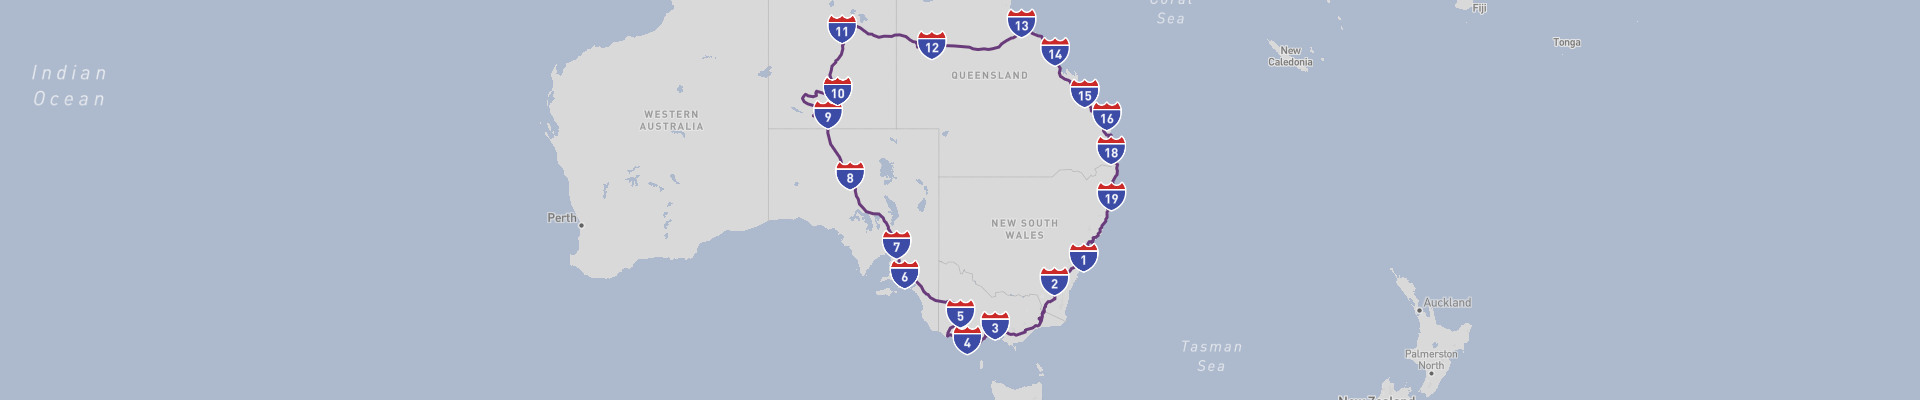 东澳大利亚公路之旅